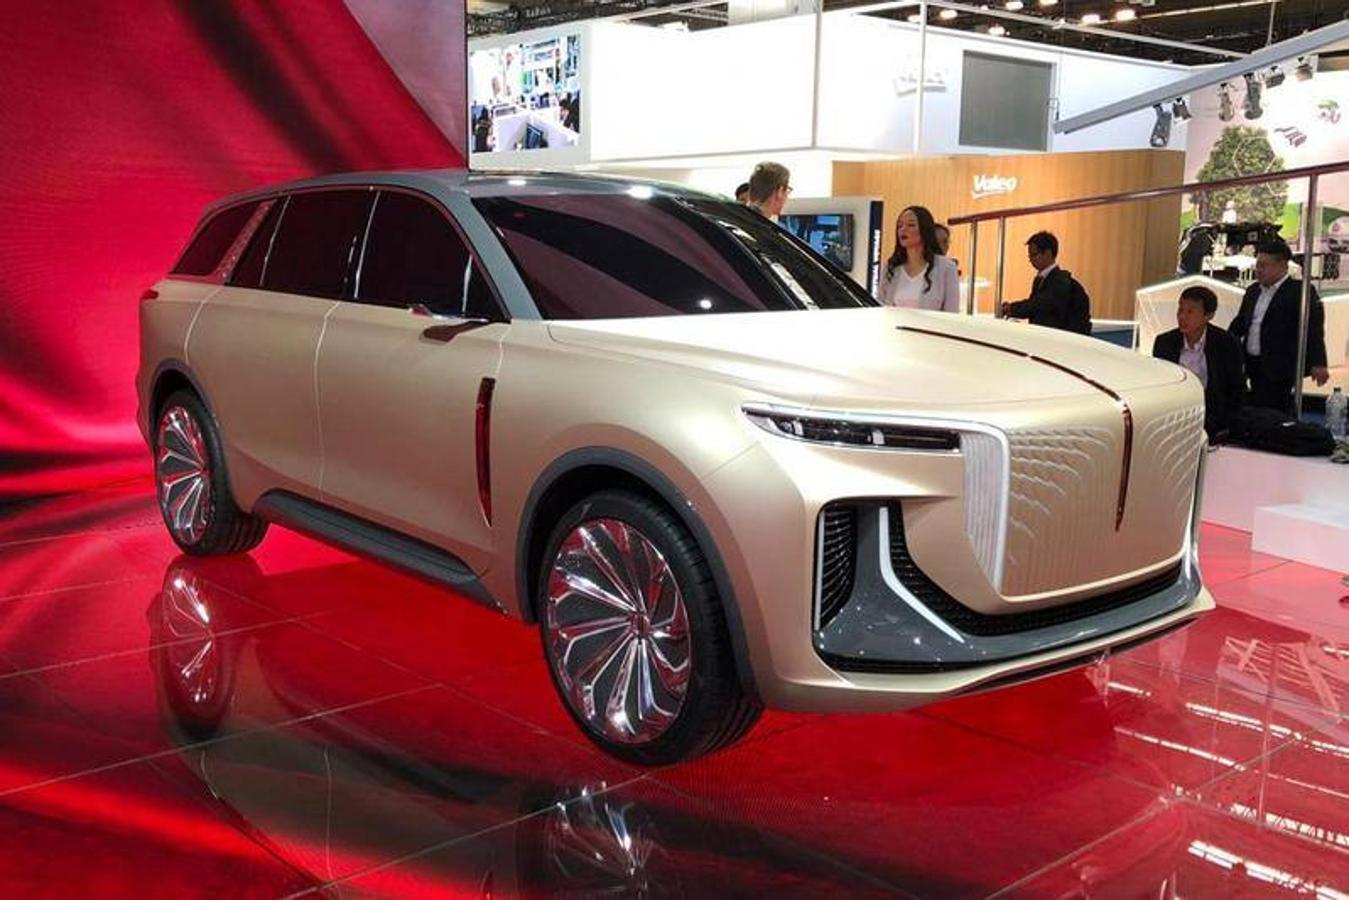 Hongqi E115. El concept E115 es un SUV eléctrico grande con apariencia moderna. Parece que los fabricantes chinos quieren competir con modelos europeos como el Mercedes-Benz GLS o el BMW X7